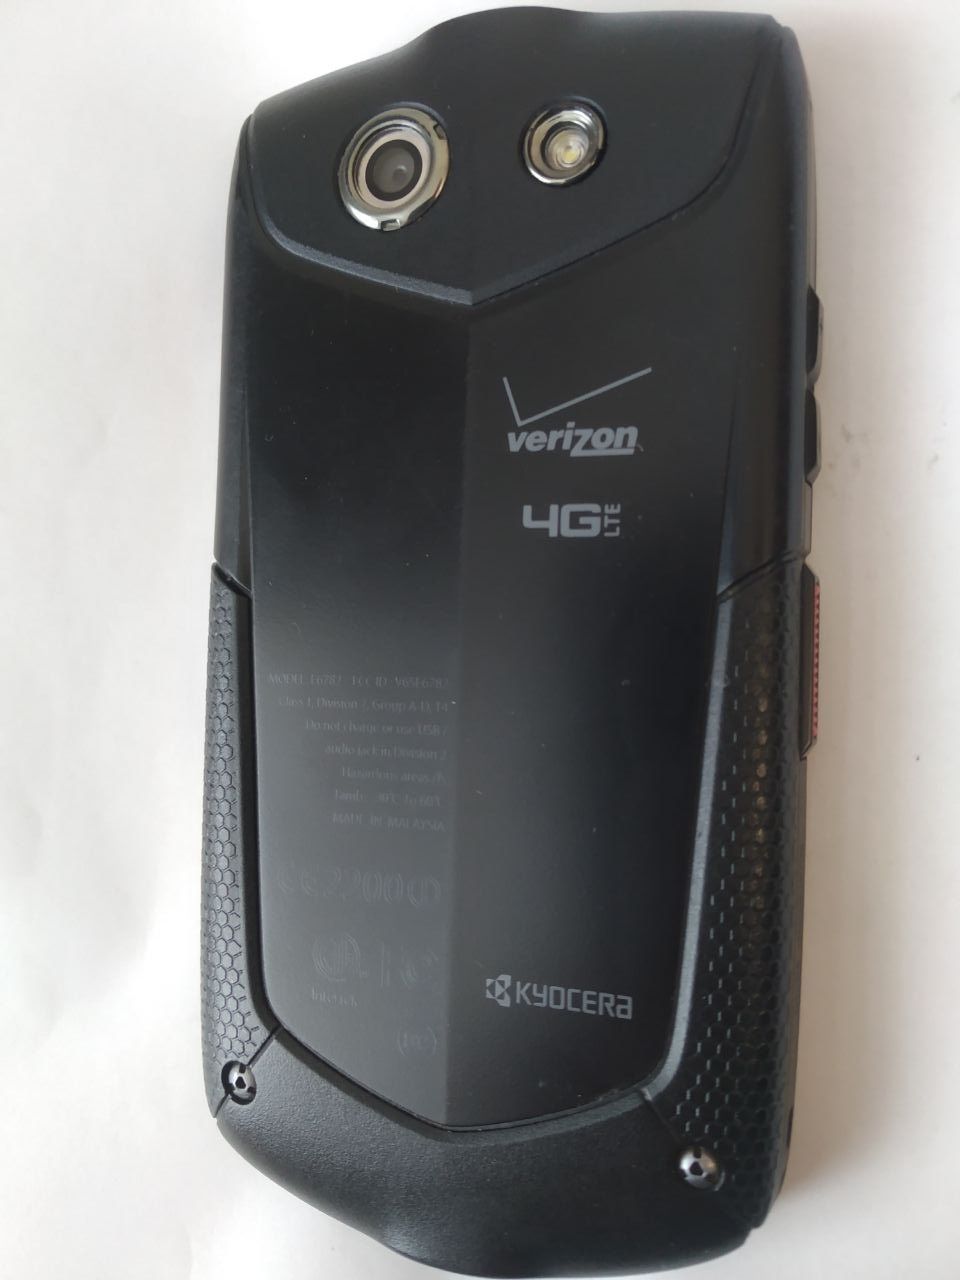 Захищений смартфон Kyocera Brigadier E6782 потребує прошивки.